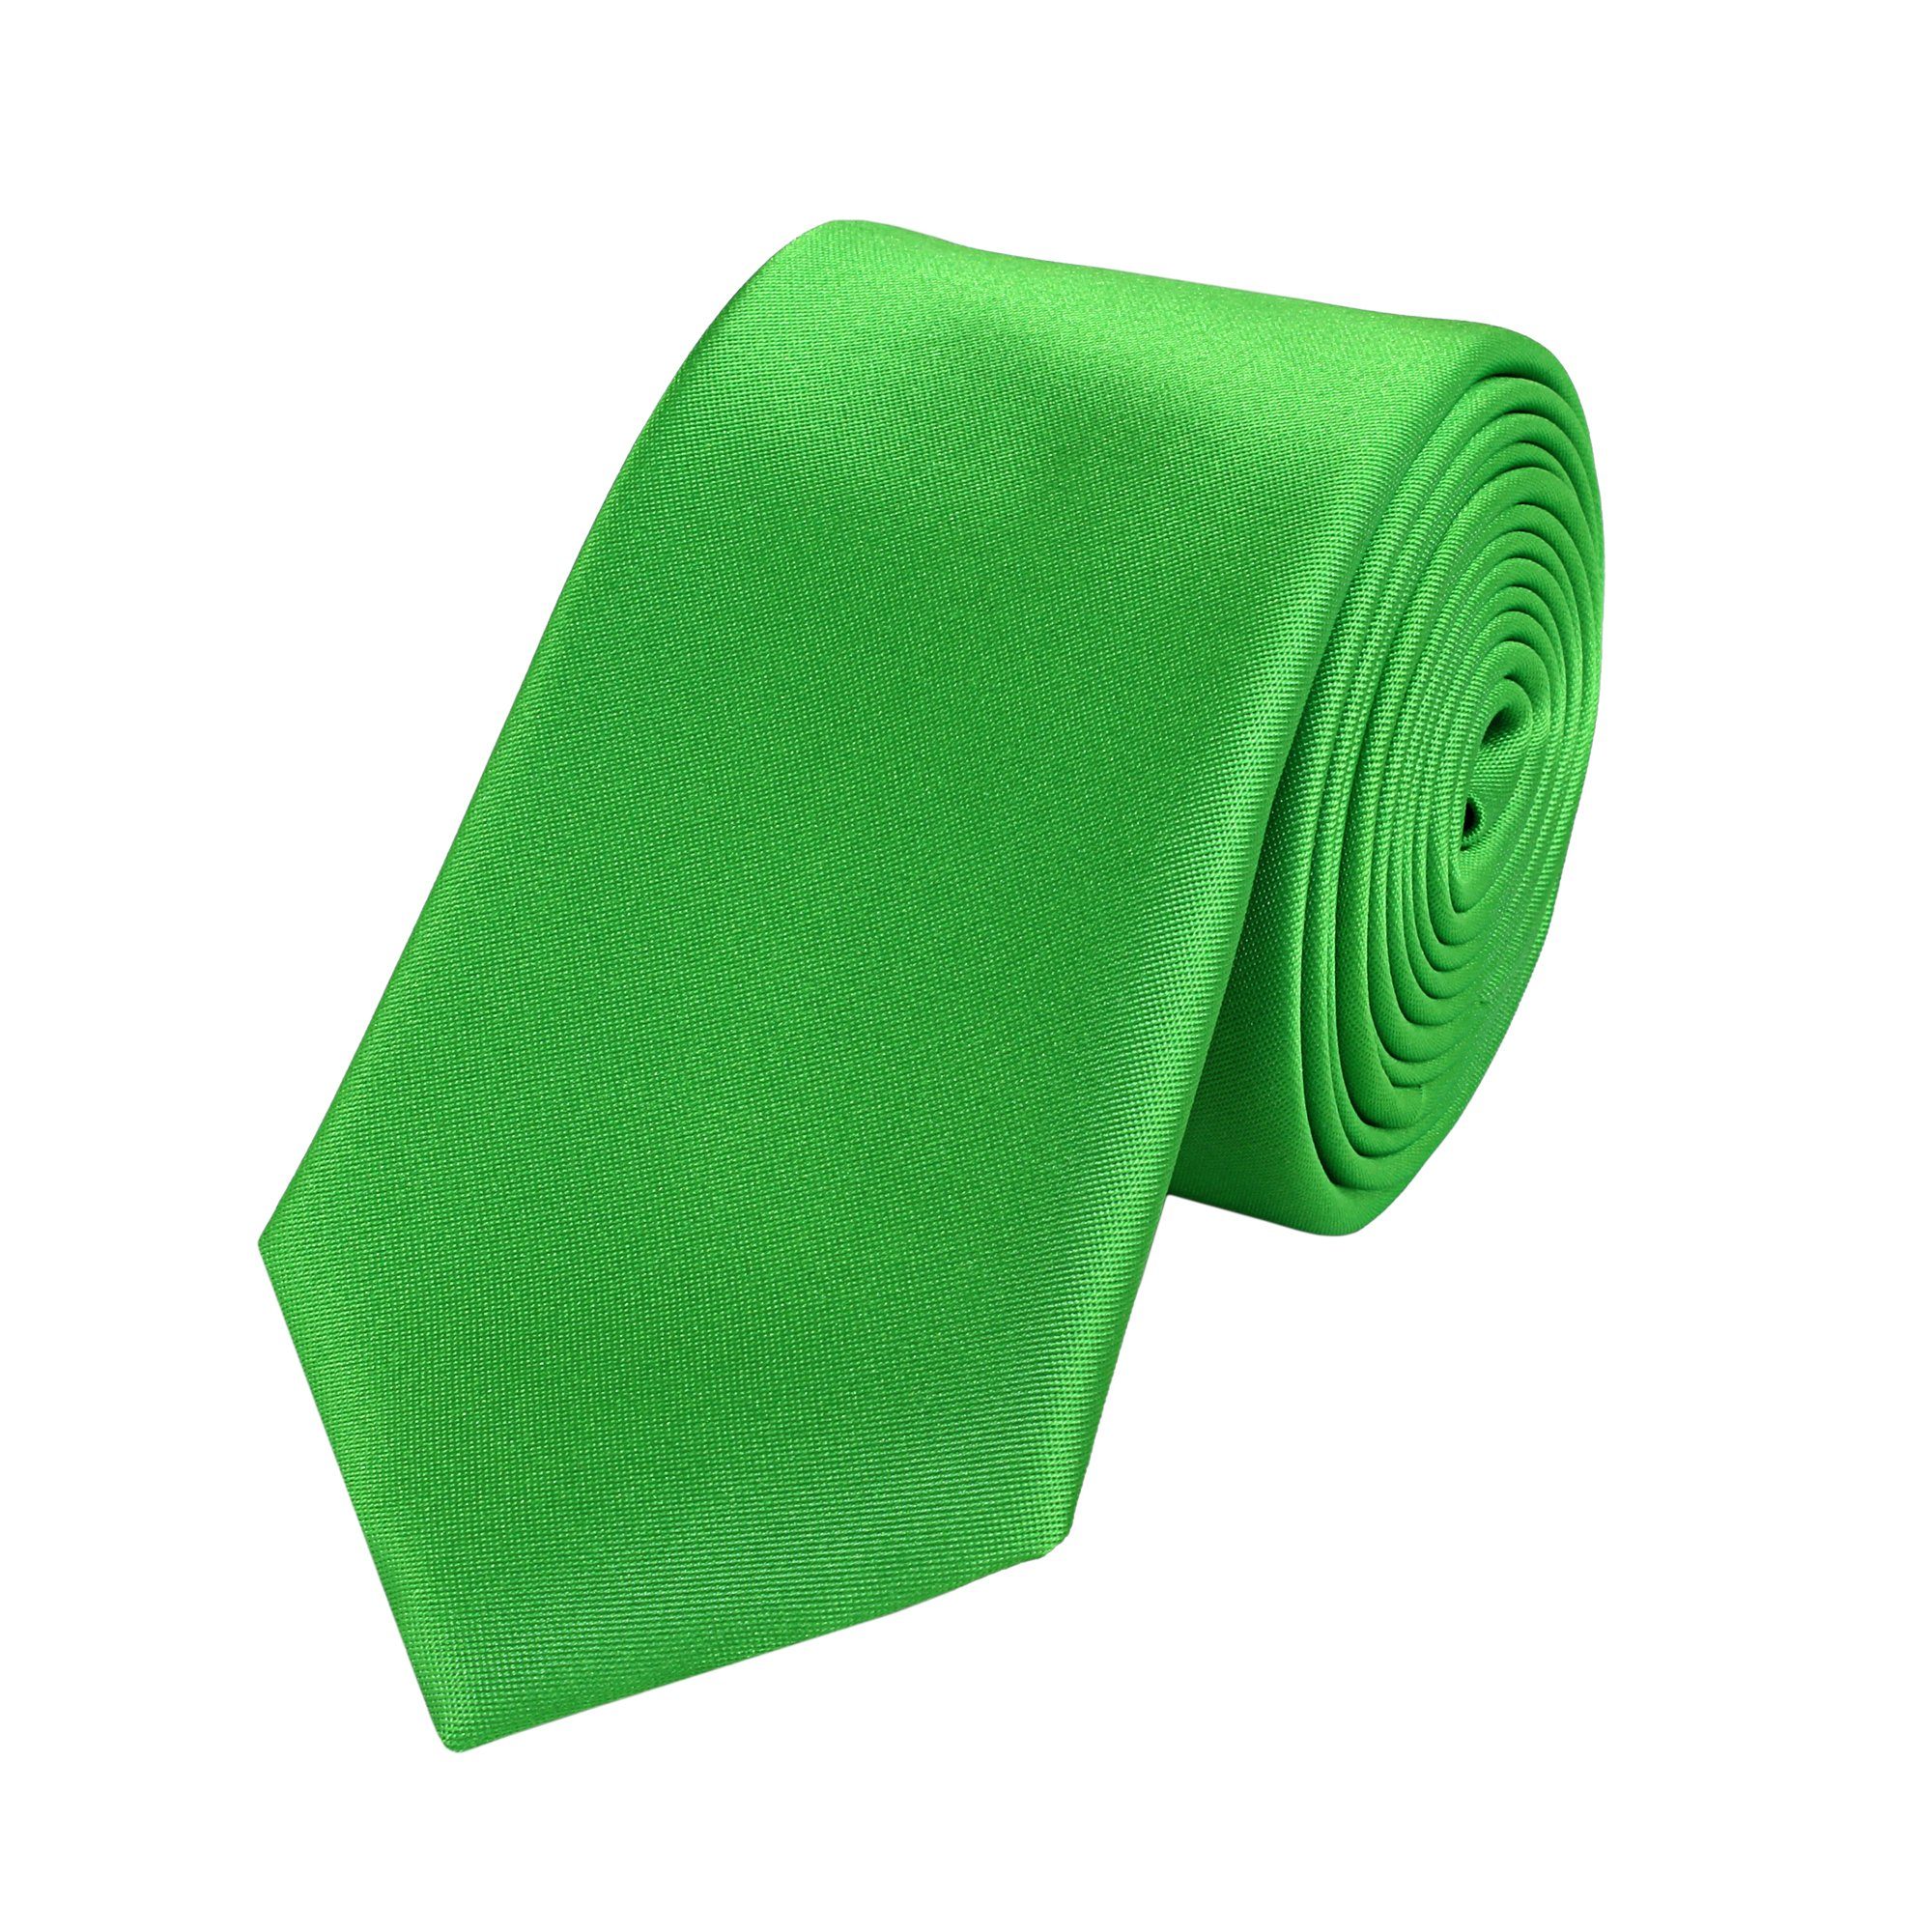 Schlips Grüne Farbton mit - Farini Fabio Krawatte Apfelgrün Unifarben) 6cm Schmal Herren (6cm), Krawatten Box, Grün (ohne in